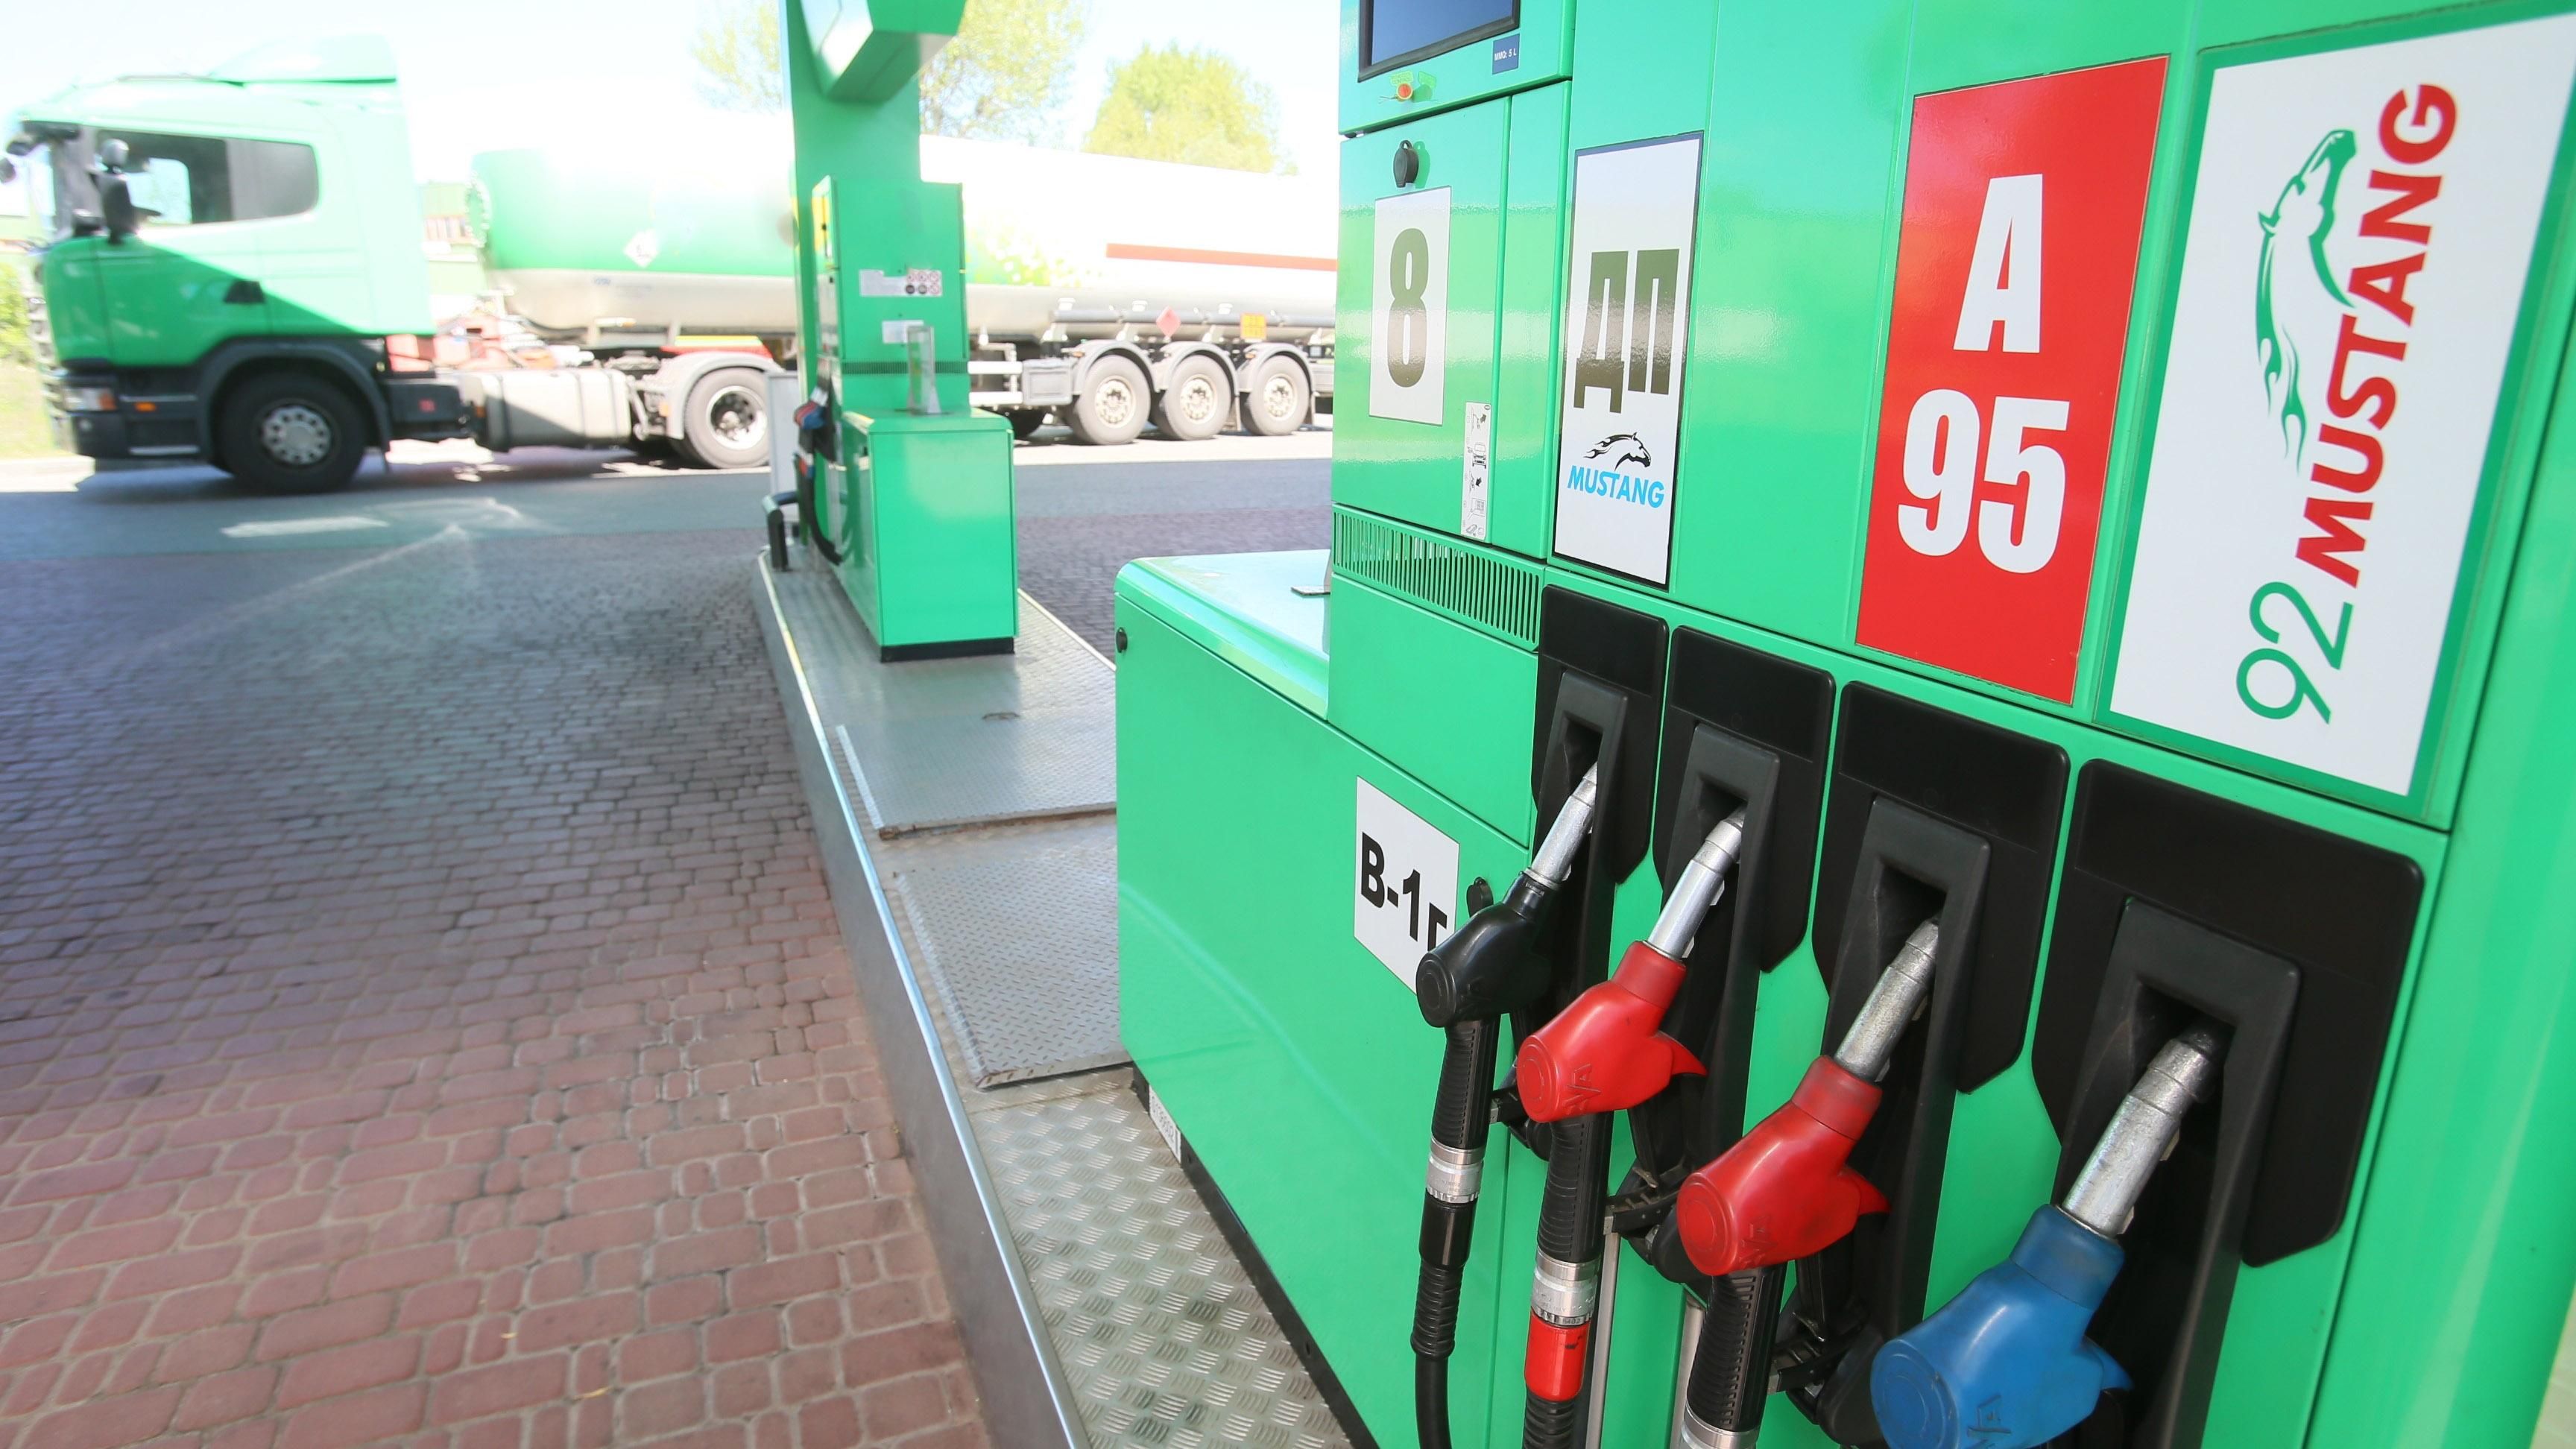 Компания, которая выигрывает тендеры у государства, закупает топливо у незаконных производителей